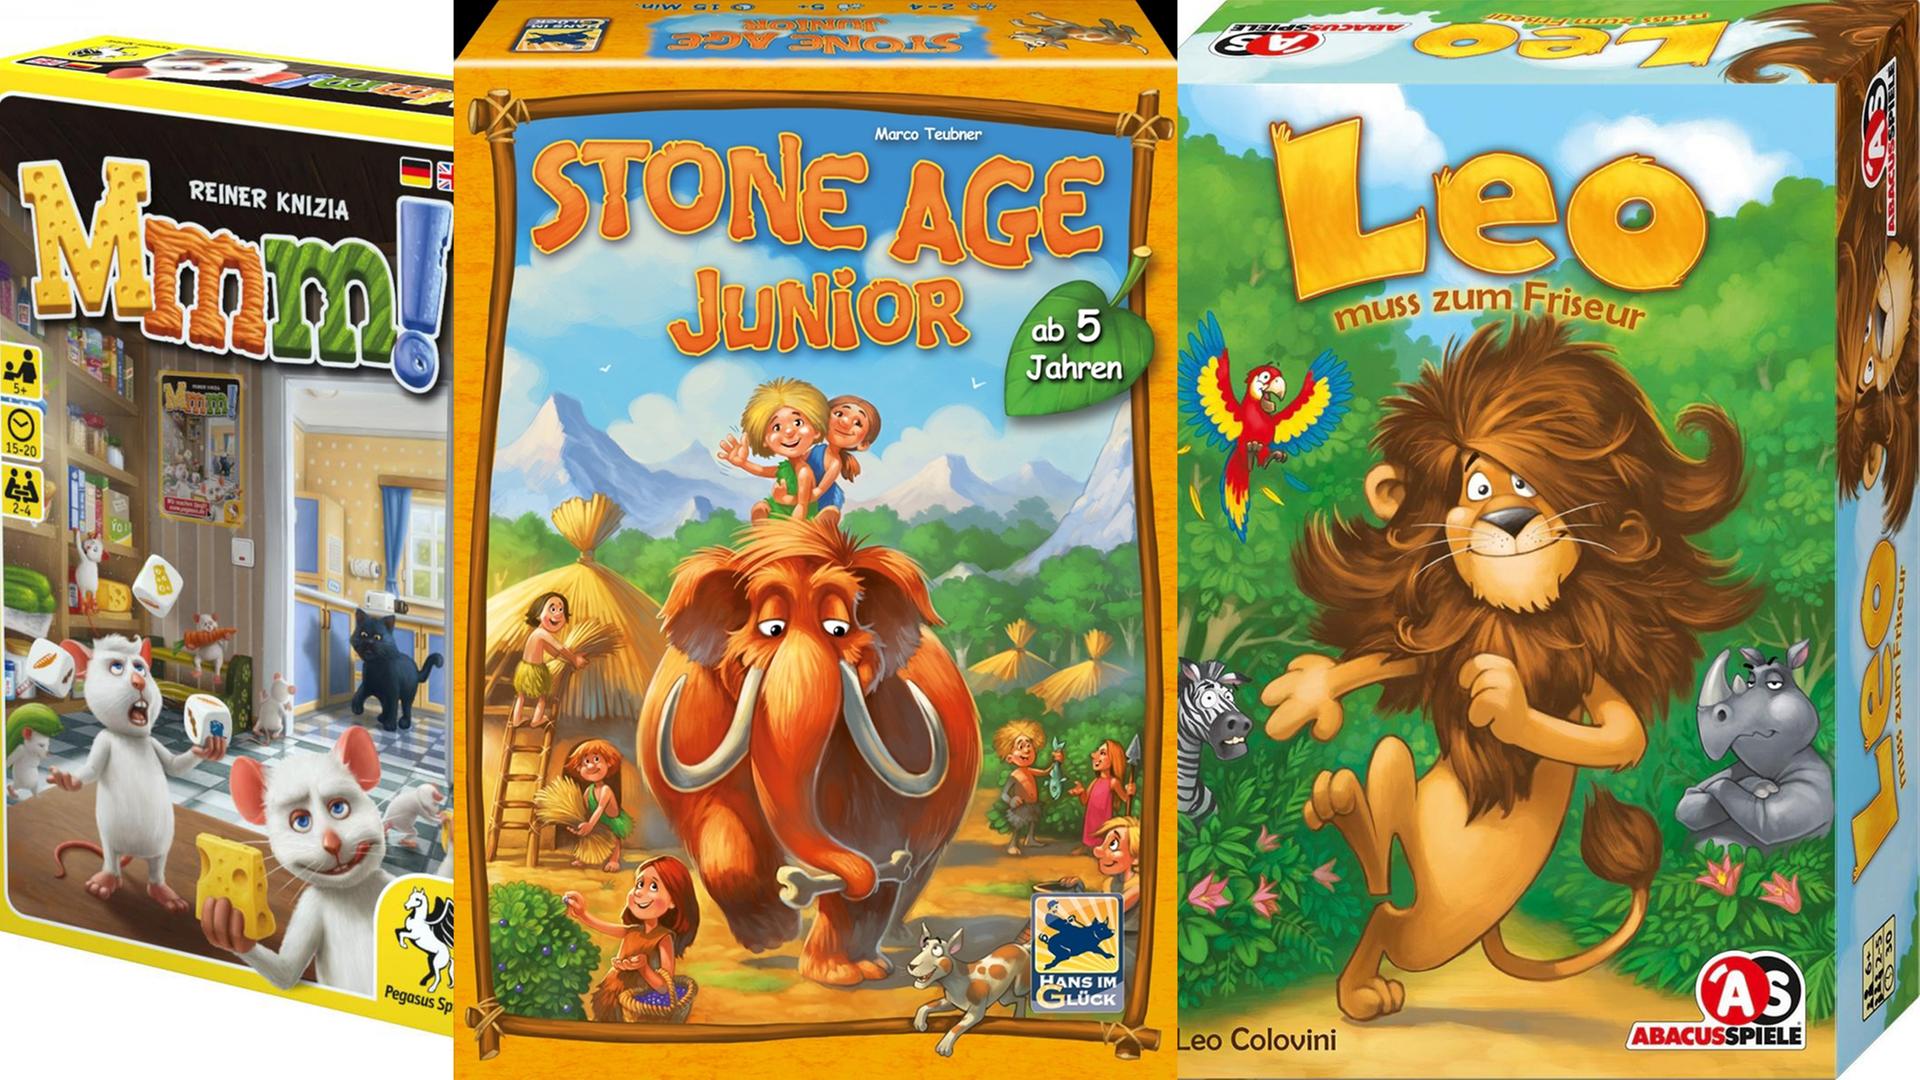 Nominiert als Kinderspiel des Jahres: "Mmmm!", "Stone Age Junior" und "Leo muss zum Friseur"